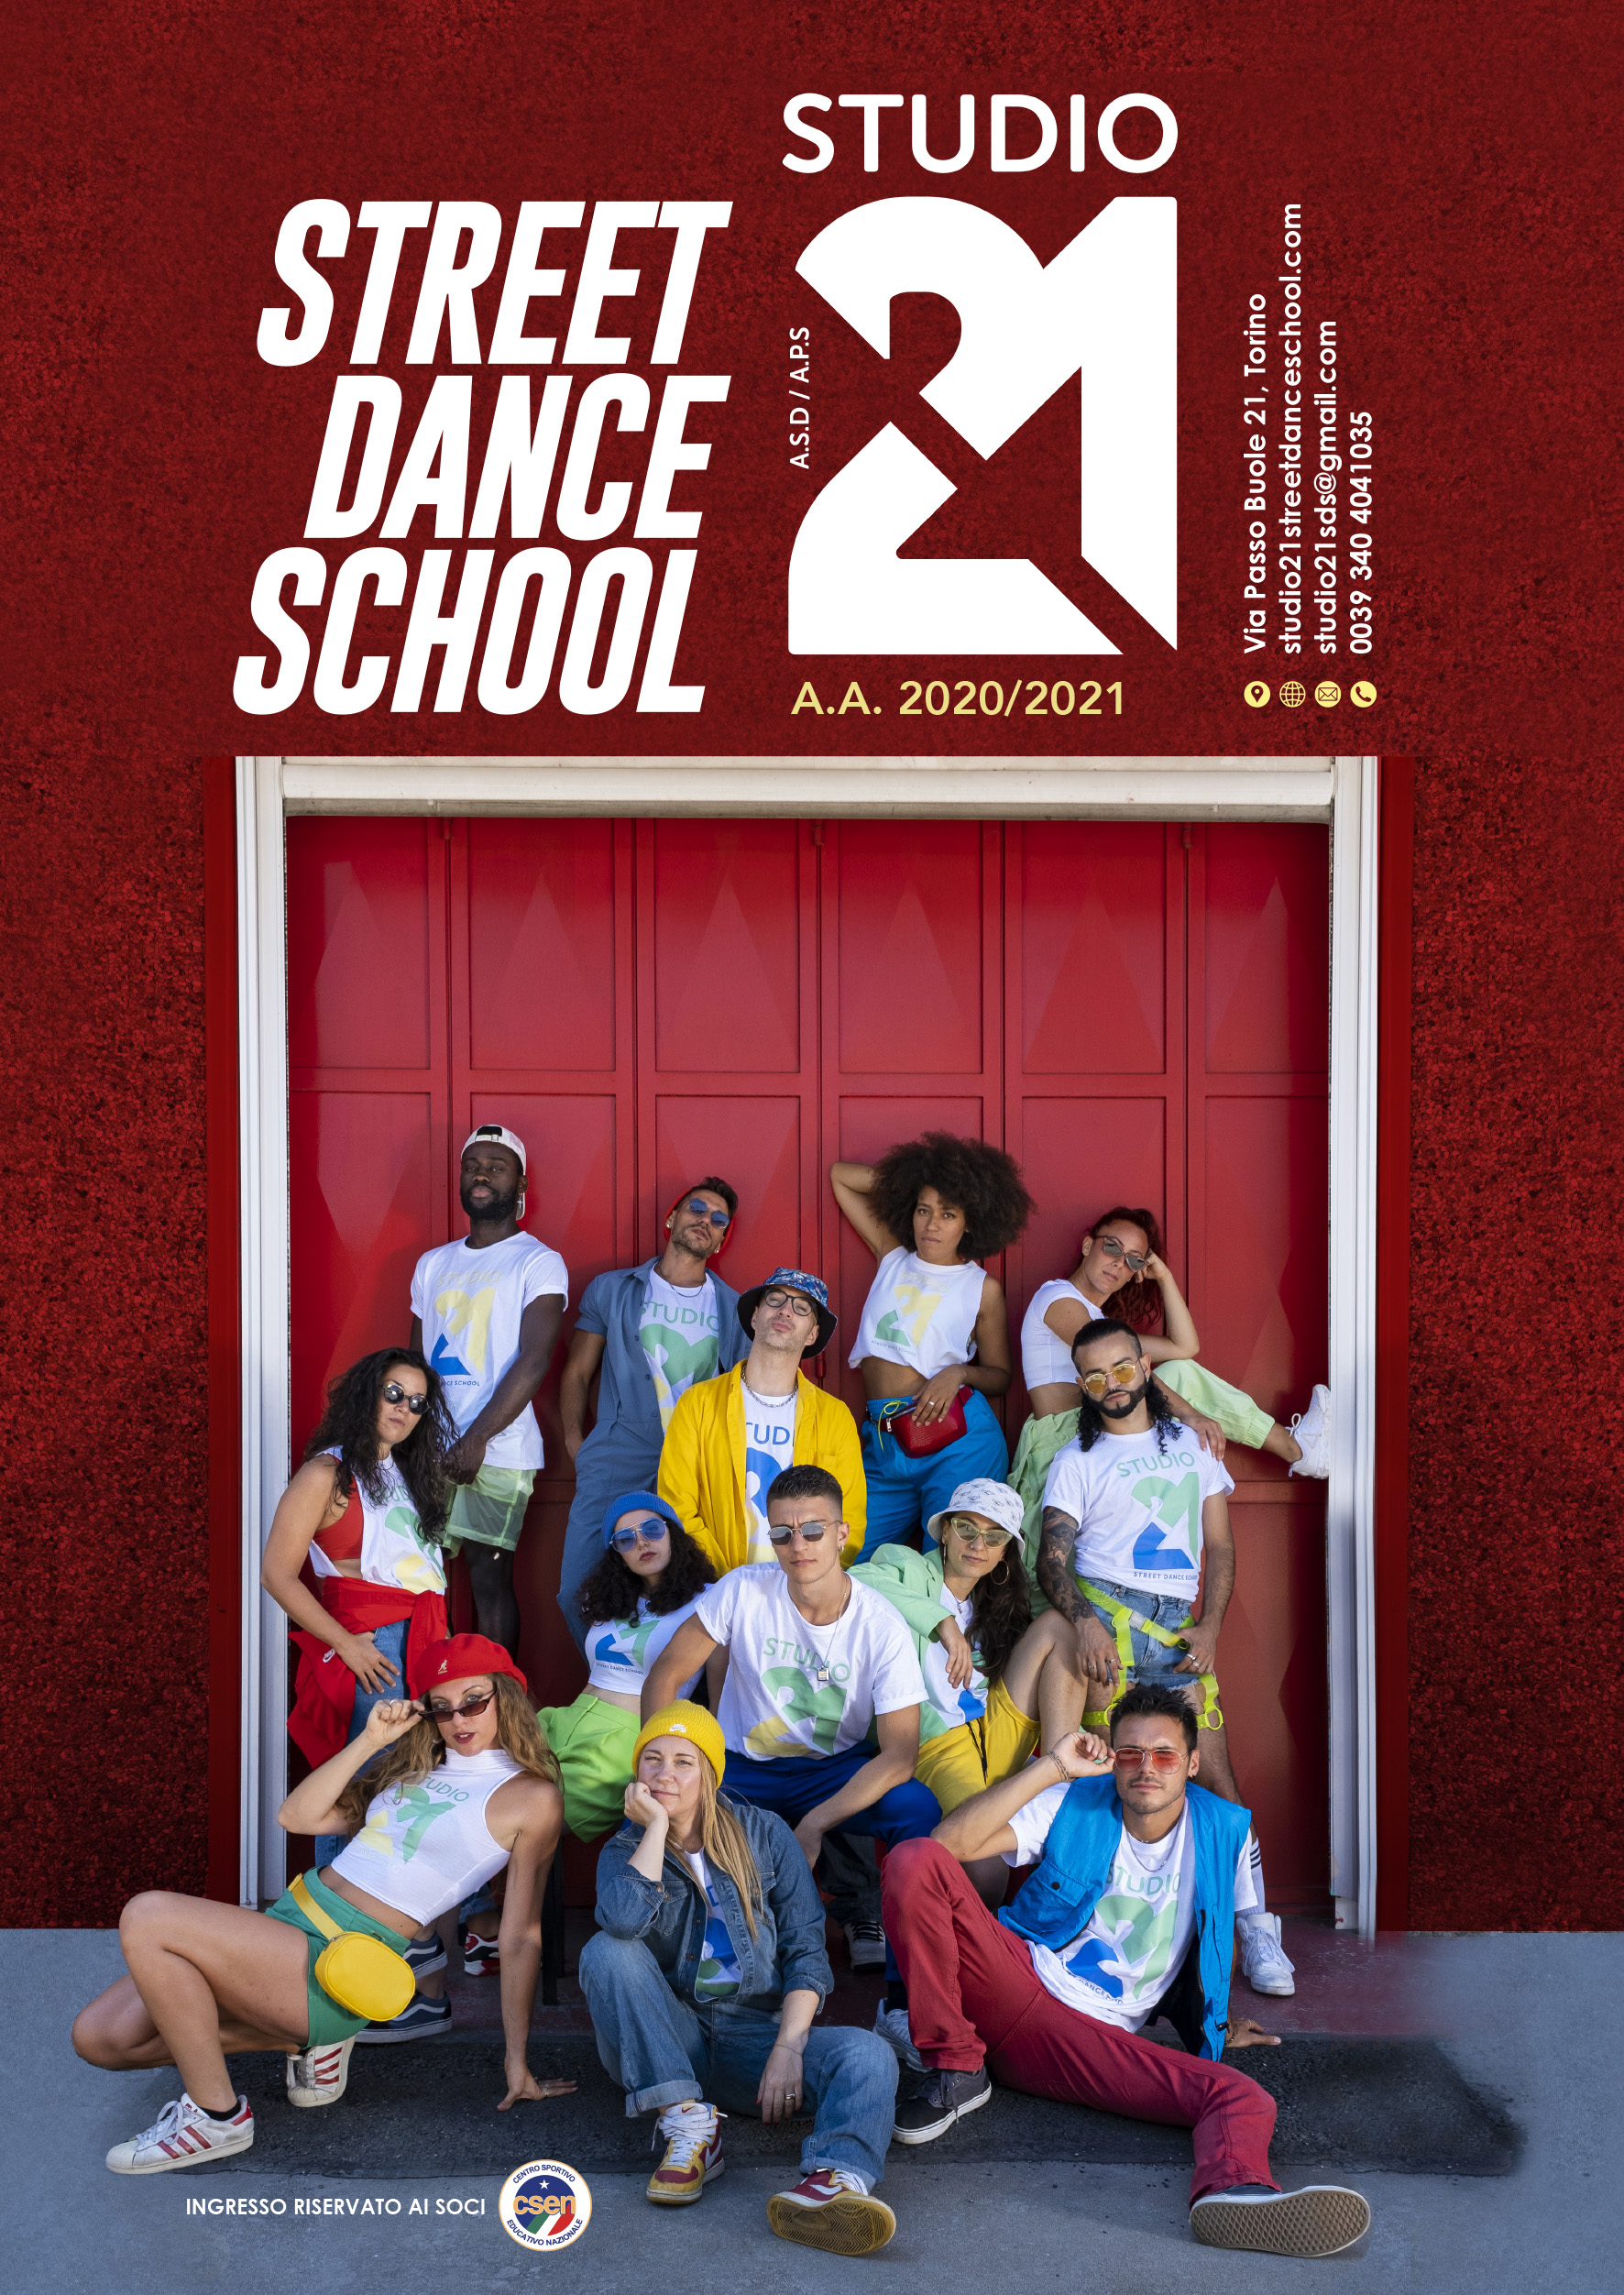 La scuola di Streetdance a Torino in cui studiare Hip Hop, Dancehall, Afrodance, Popping, Waacking e Voguing con i migliori insegnanti della scena.